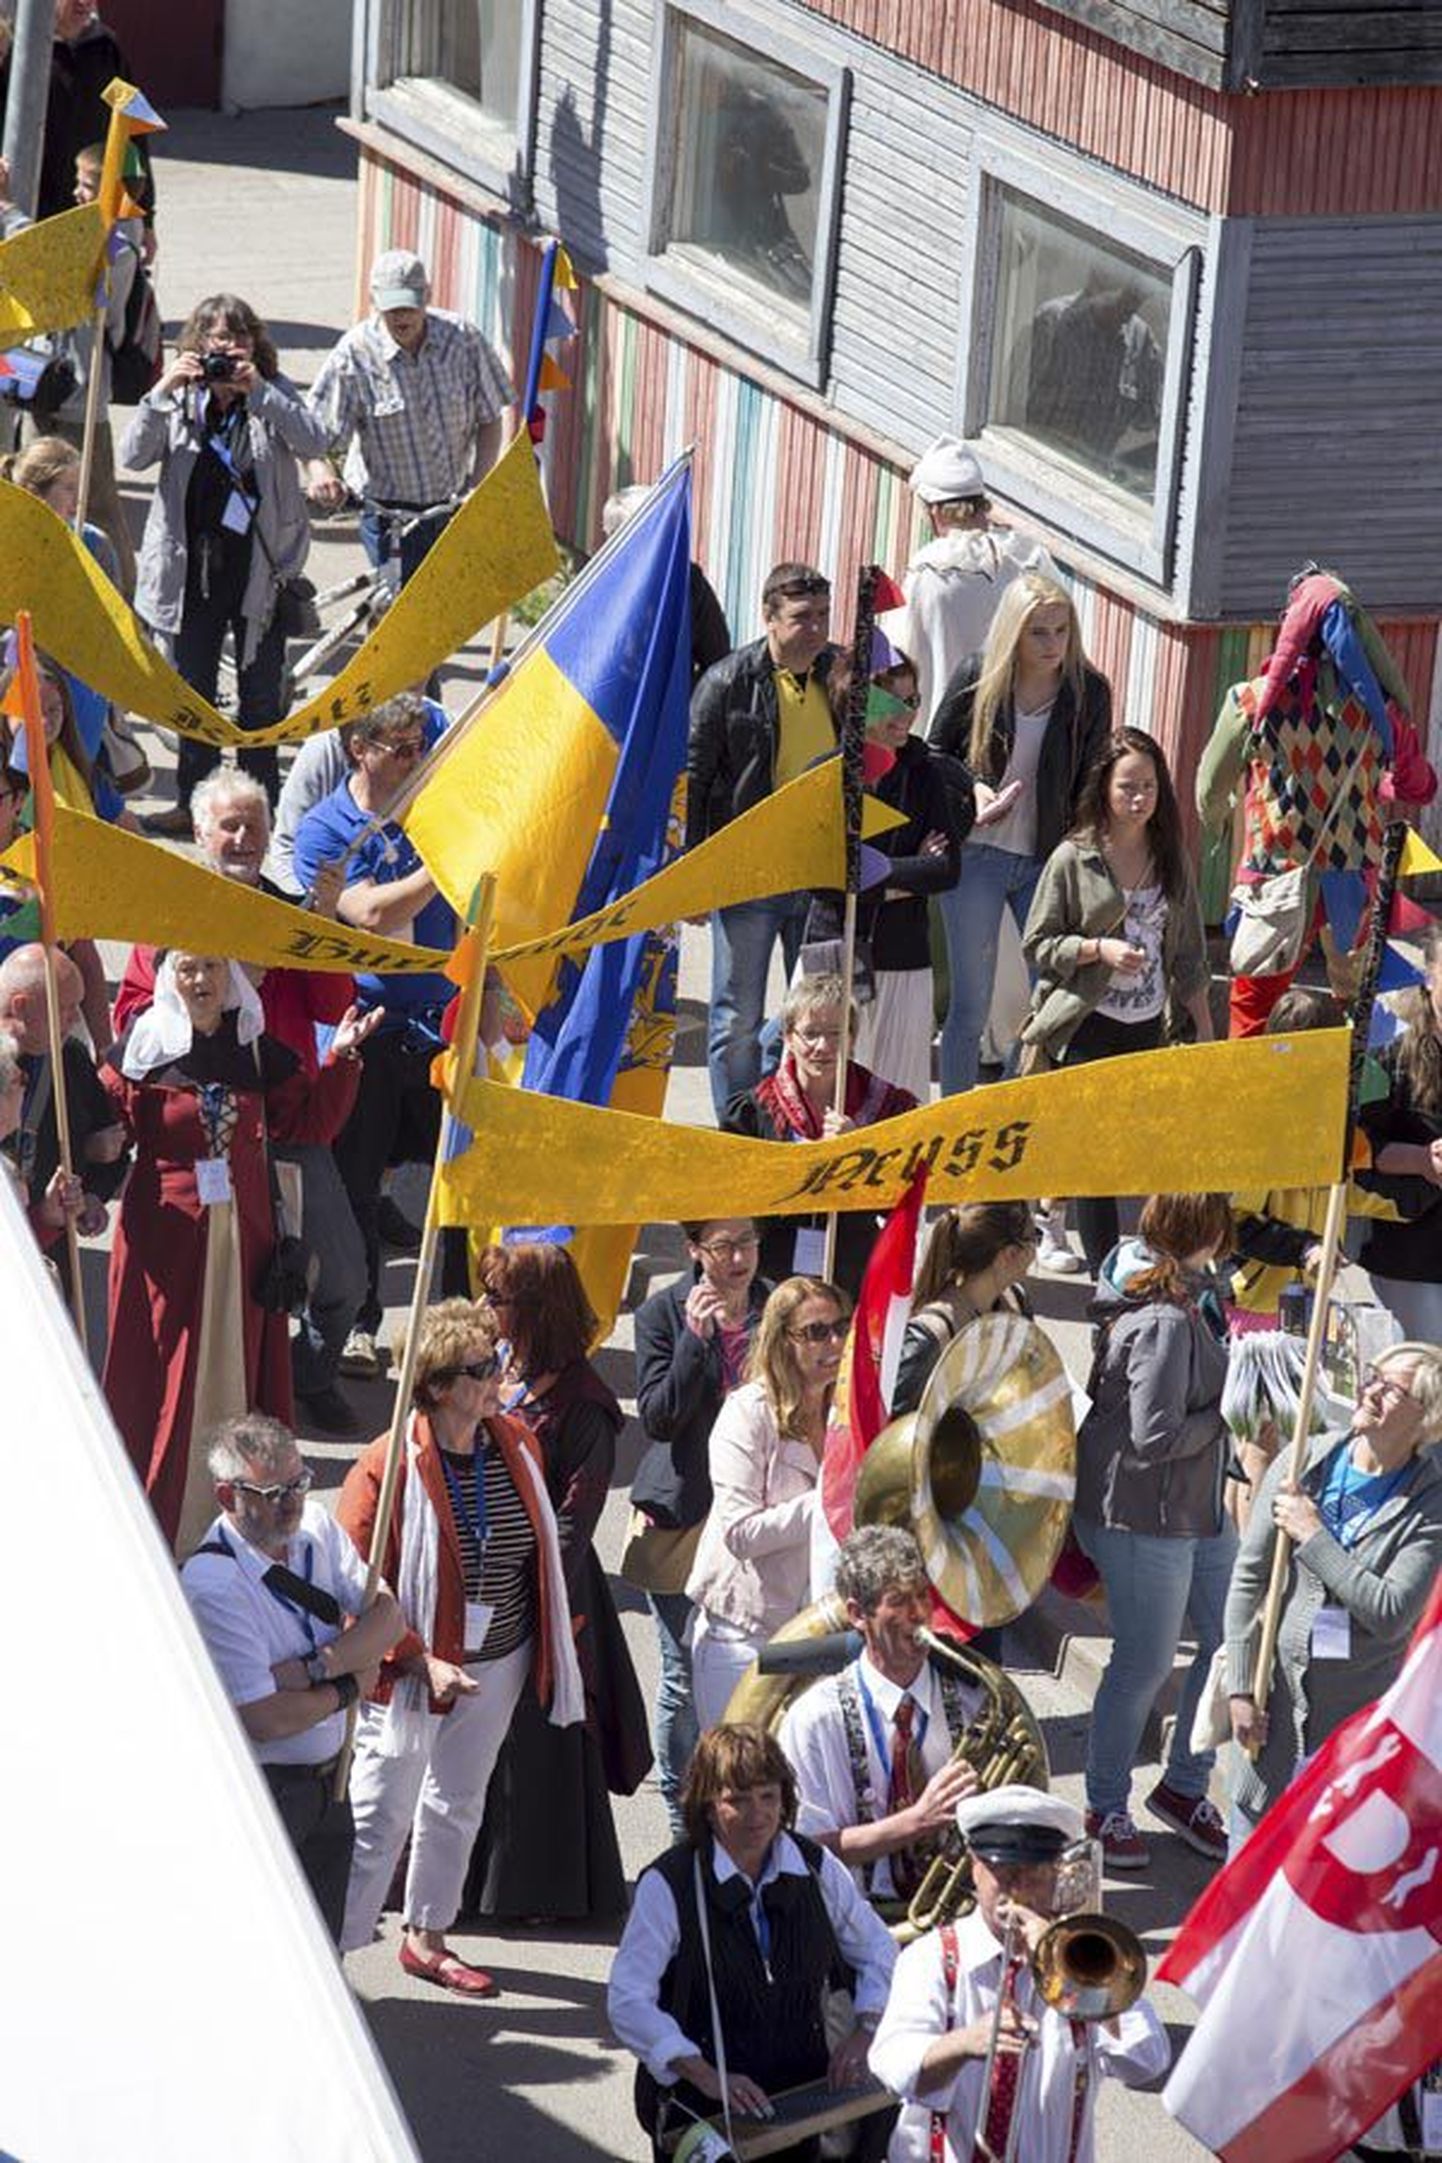 Viljandis peetud rahvusvahelised hansapäevad tunnistati Lõuna-Eesti selle aasta kõige paremaks turismisündmuseks.